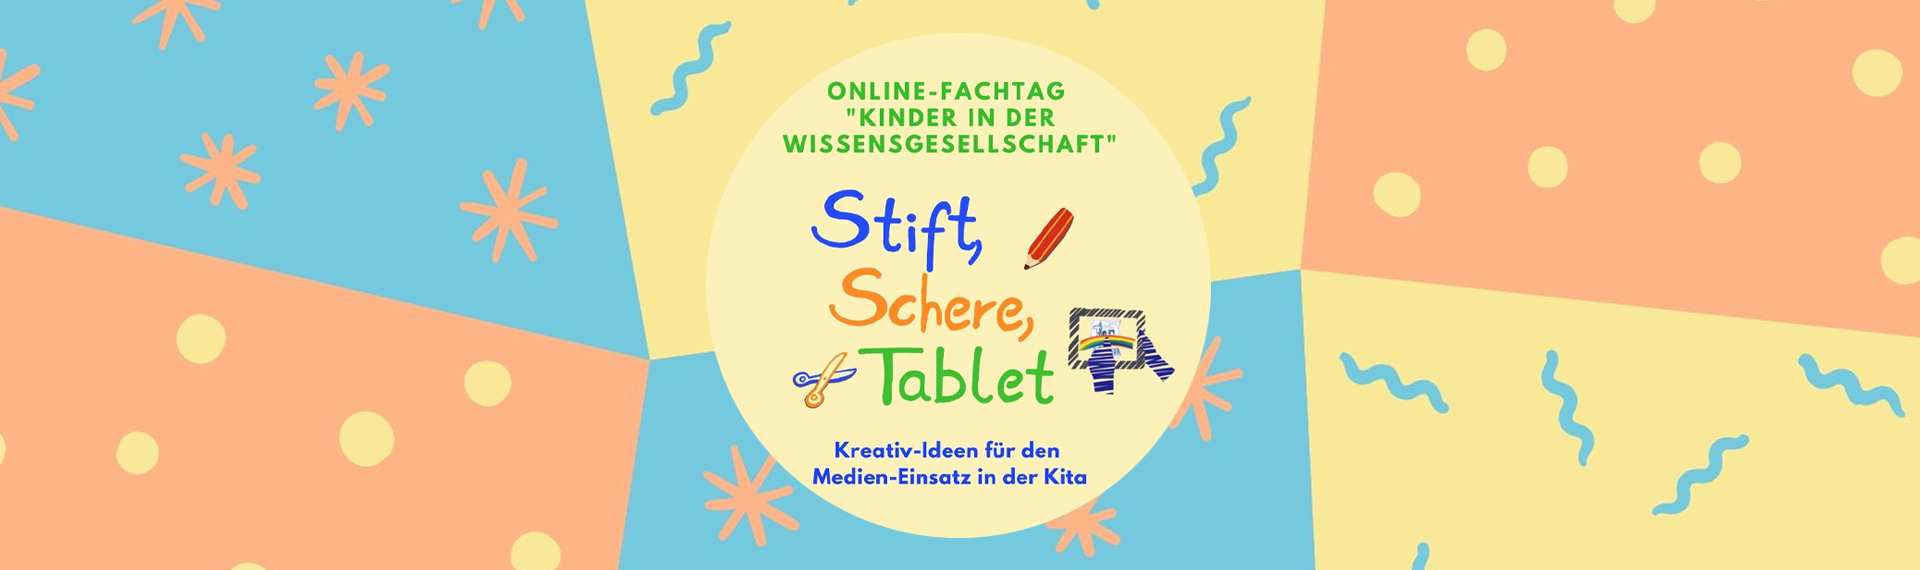 Visual Fachtag Kinder in der Wissensgesellschaft mit Titel "Stift, Schere, Tablet"